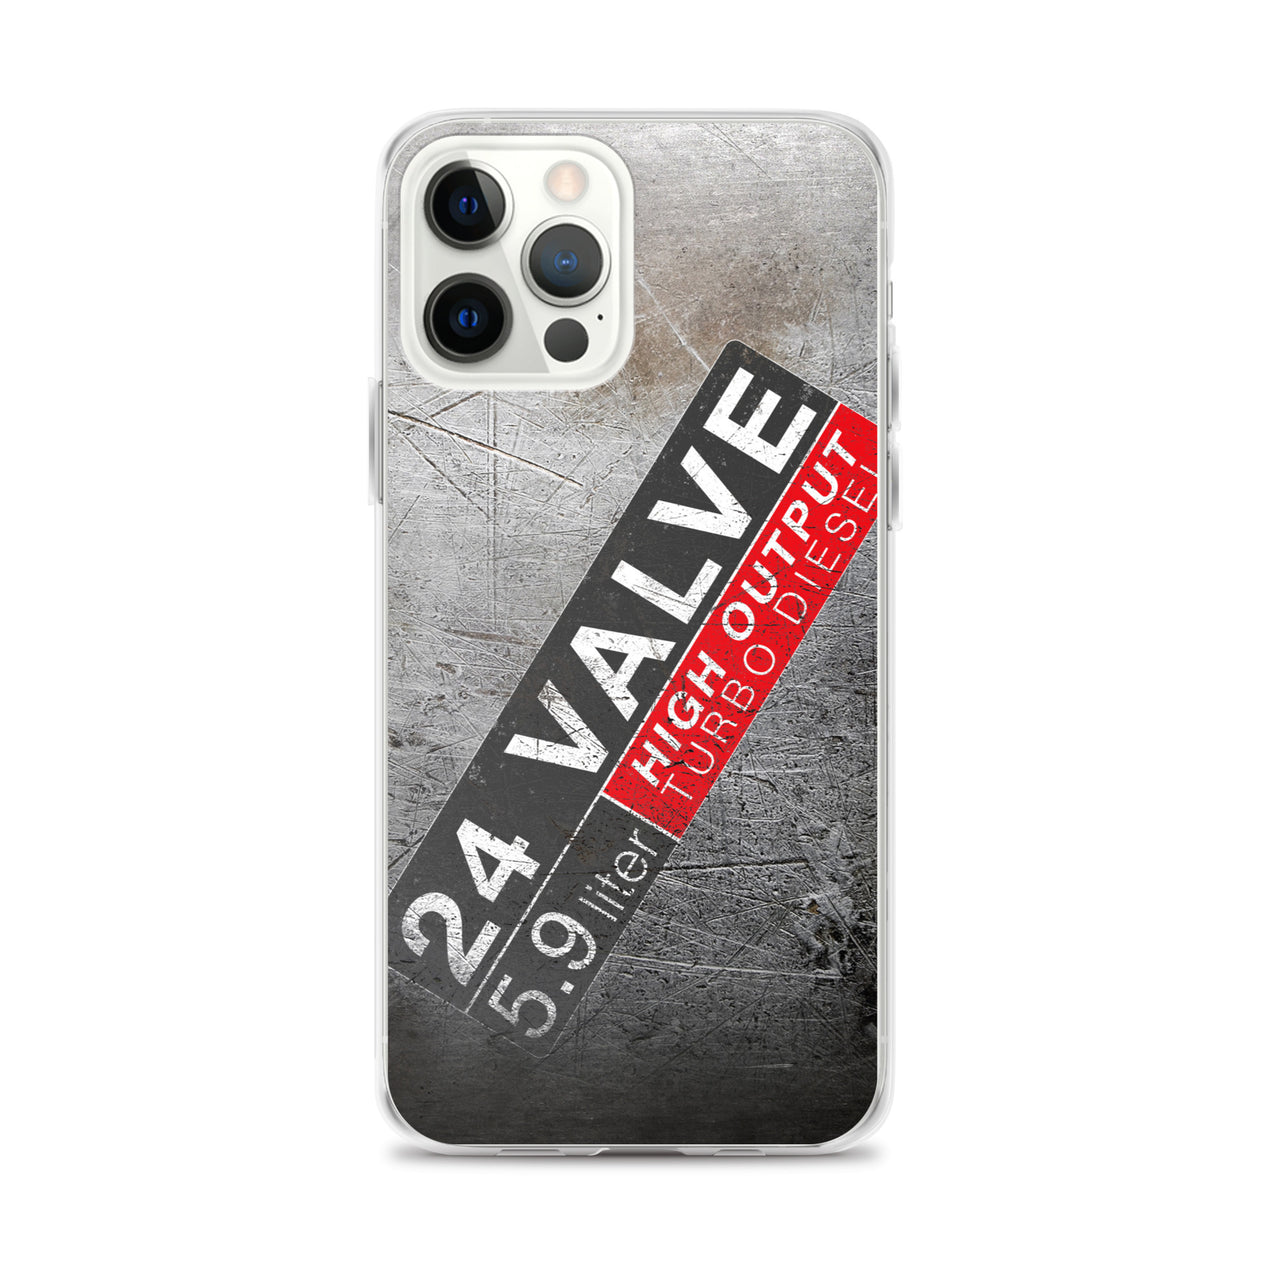 24 Valve Cummins Phone case for iPhone